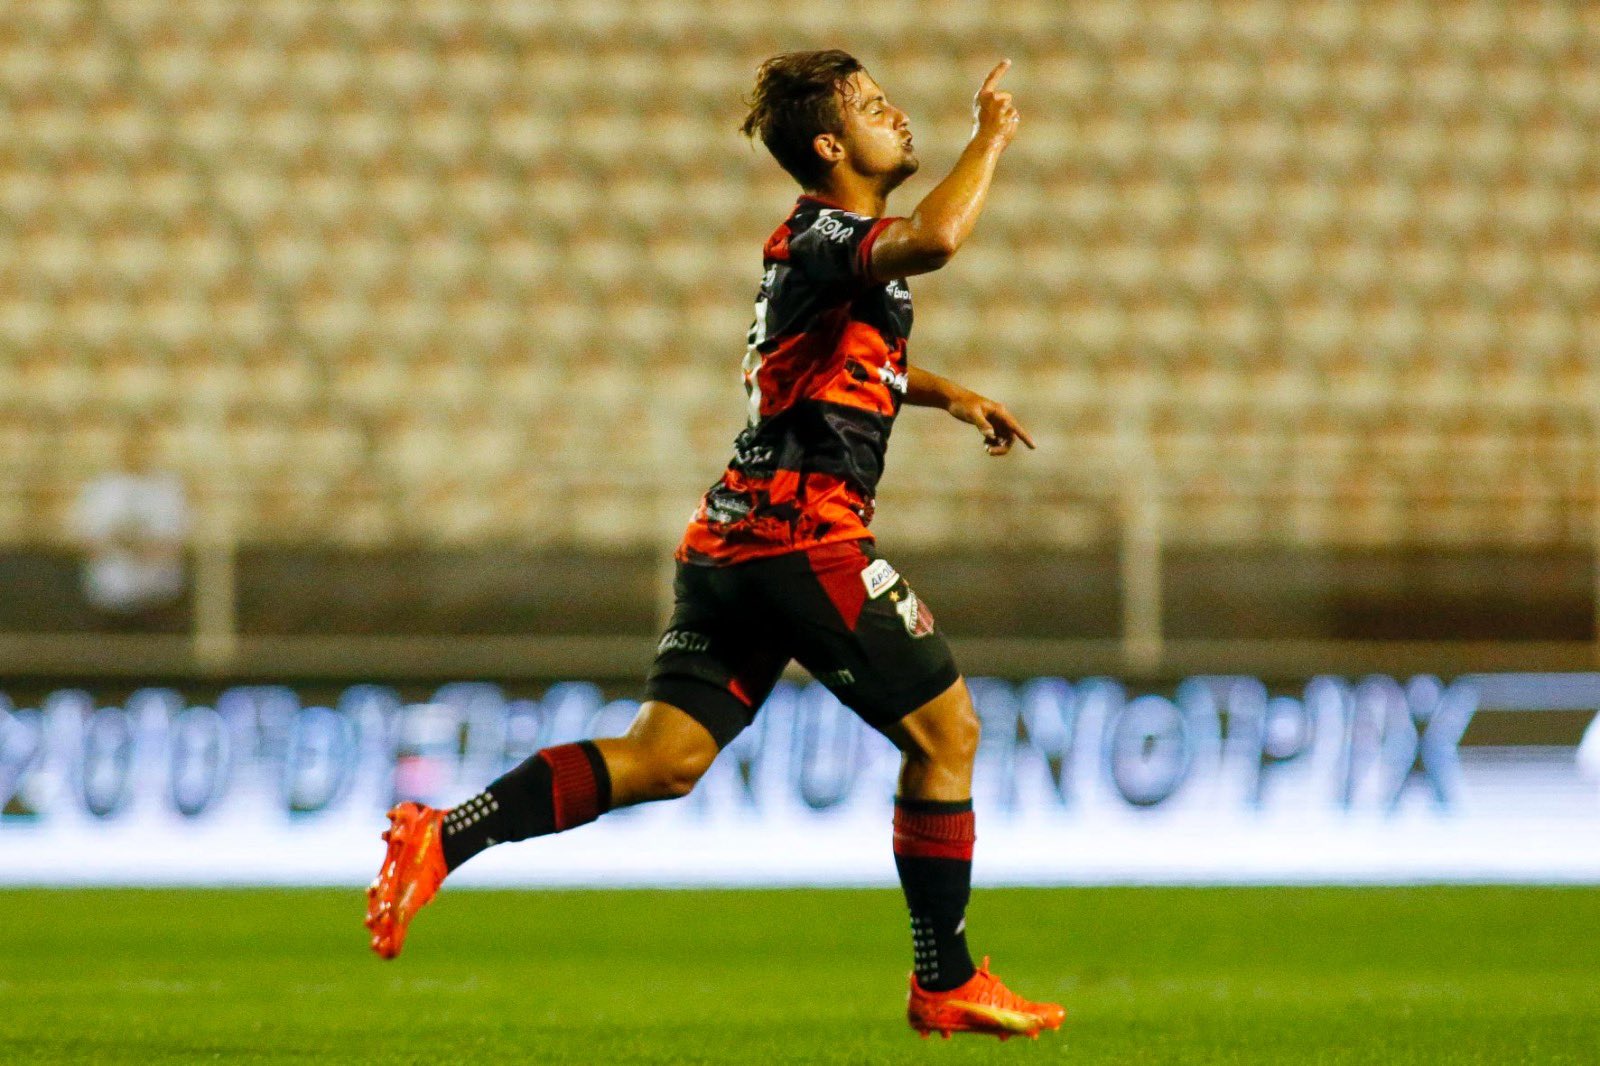 Carvalheira marcou seu segundo gol nesta Série B. (Foto: Miguel Schincariol/Ituano FC)